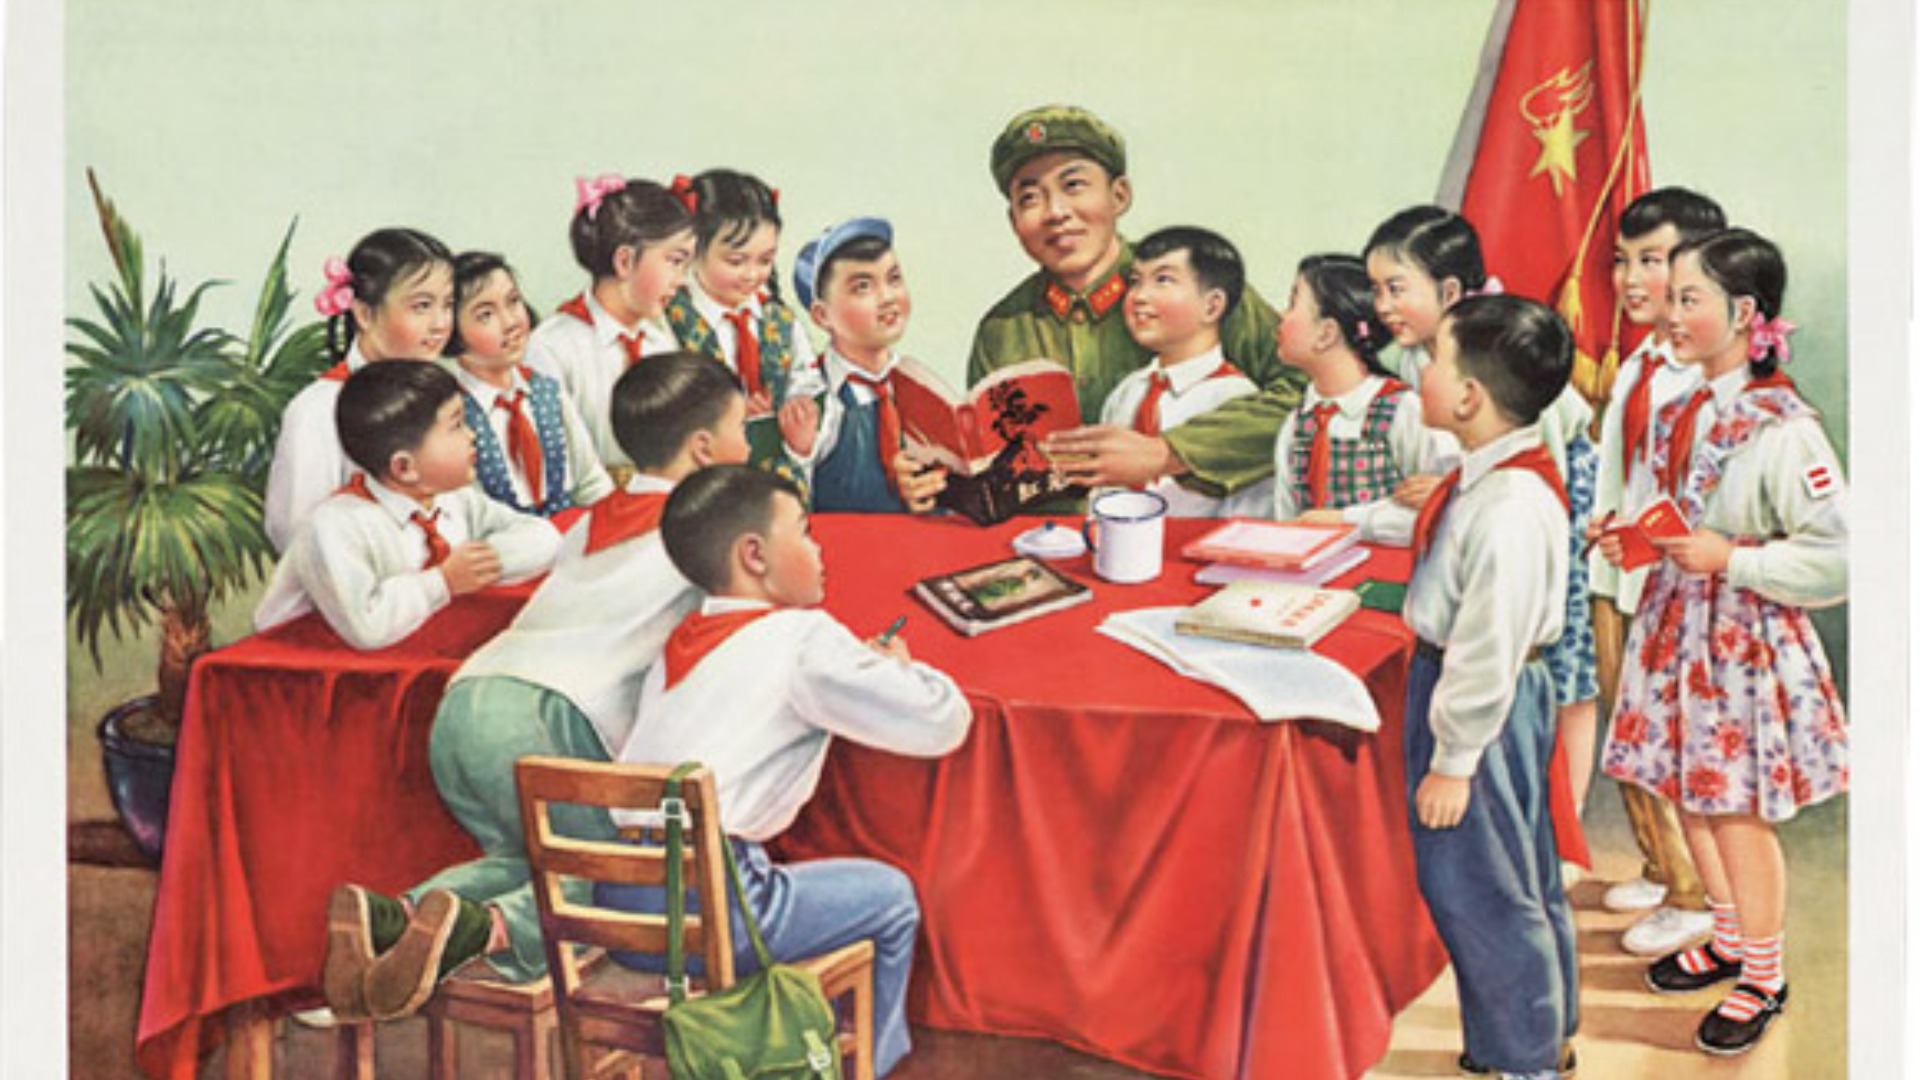 Az 1965-ből származó poszteren a Kínai Kommunista Párt egyik hétköznapi hőse, Lei Feng látható. A kép címe: Lei Feng bácsi forradalmi történeteket mesél. Lei Feng propagandisztikus legendája Mao alatt kezdődött, a Kínai Kommunista Párt azonban a vezető halála után tovább éltette a legendát. 